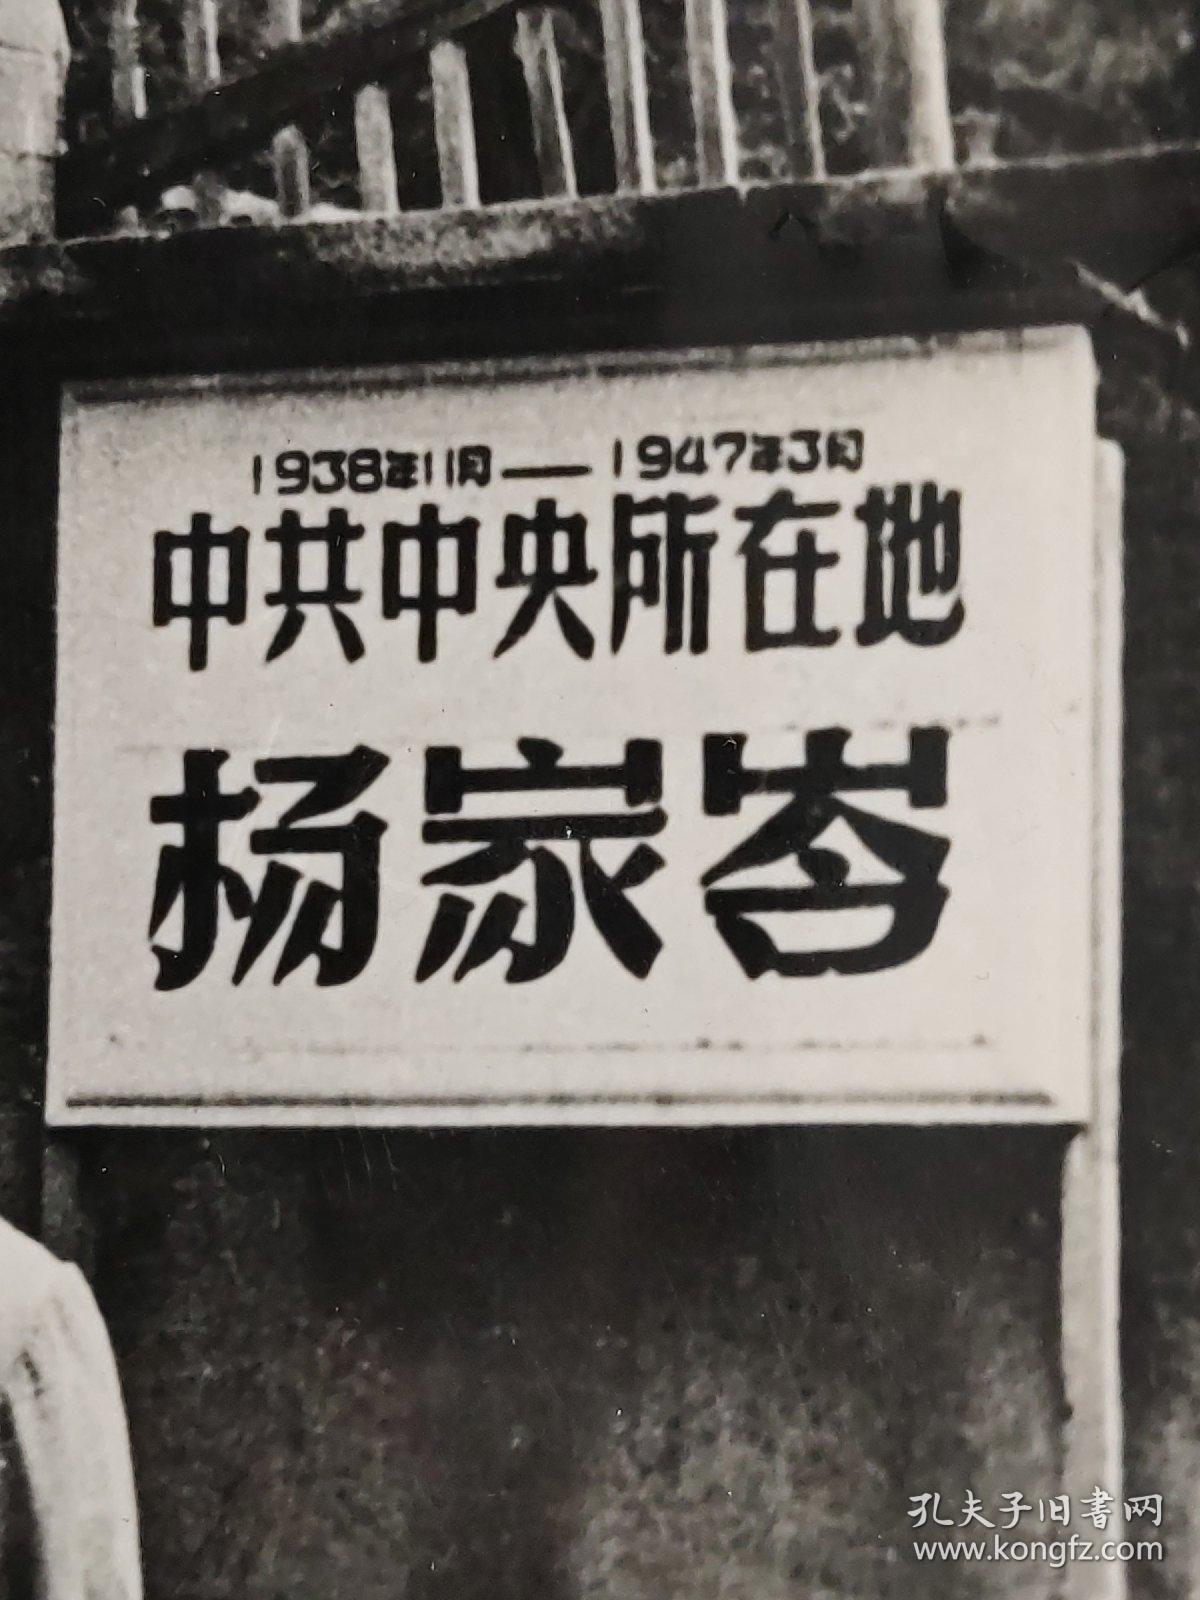 老照片、新华社新闻展览照片：1938年1月---1947年3月 中共中央所在地 杨家岺留影的黑白照片        黑白照片箱 00017